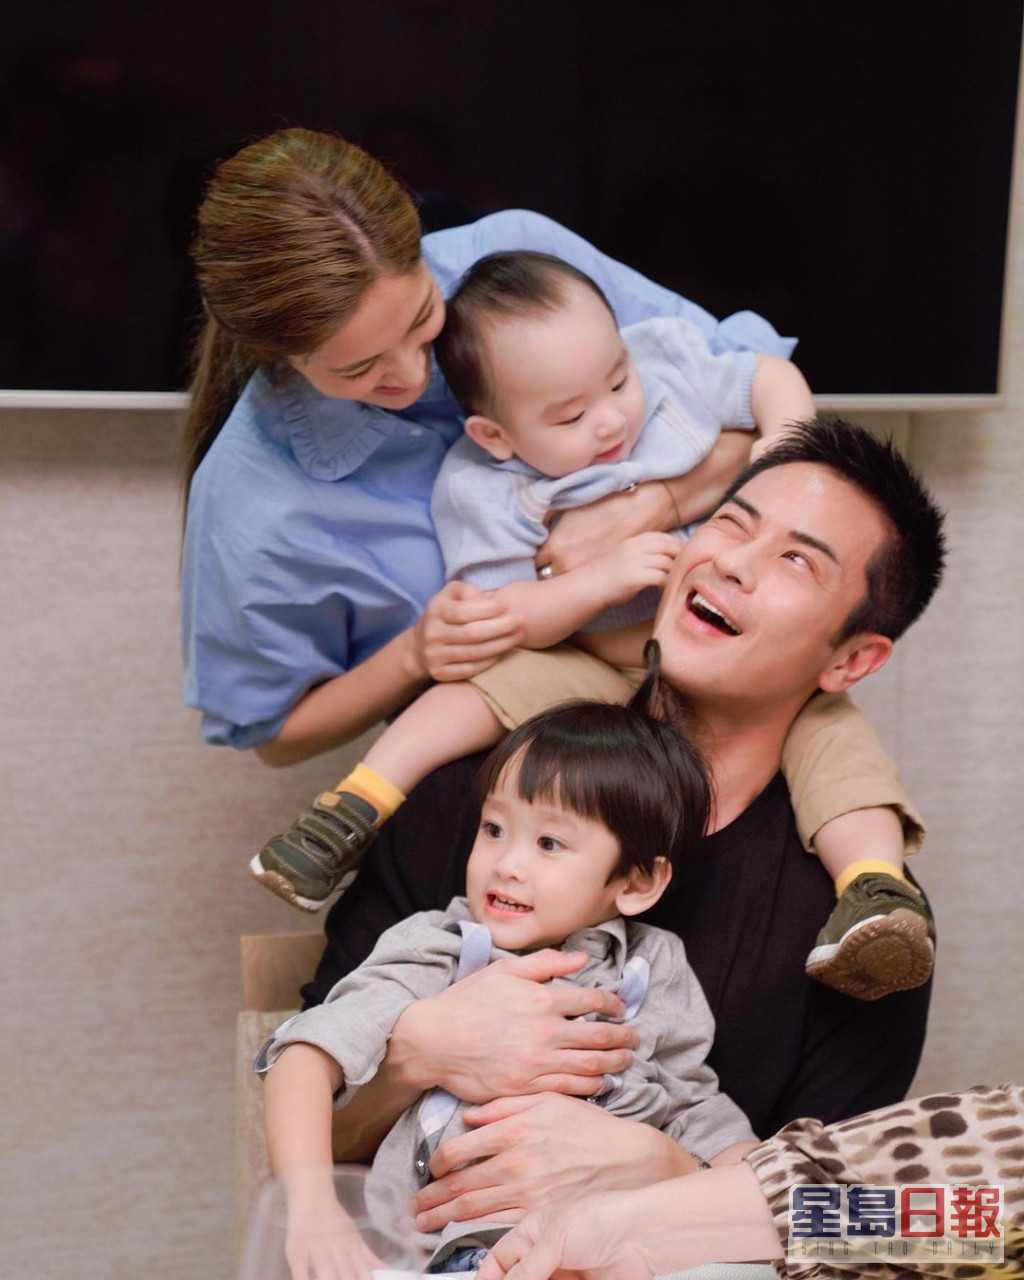 陳凱琳與鄭嘉穎經常在社交網分享家庭照。